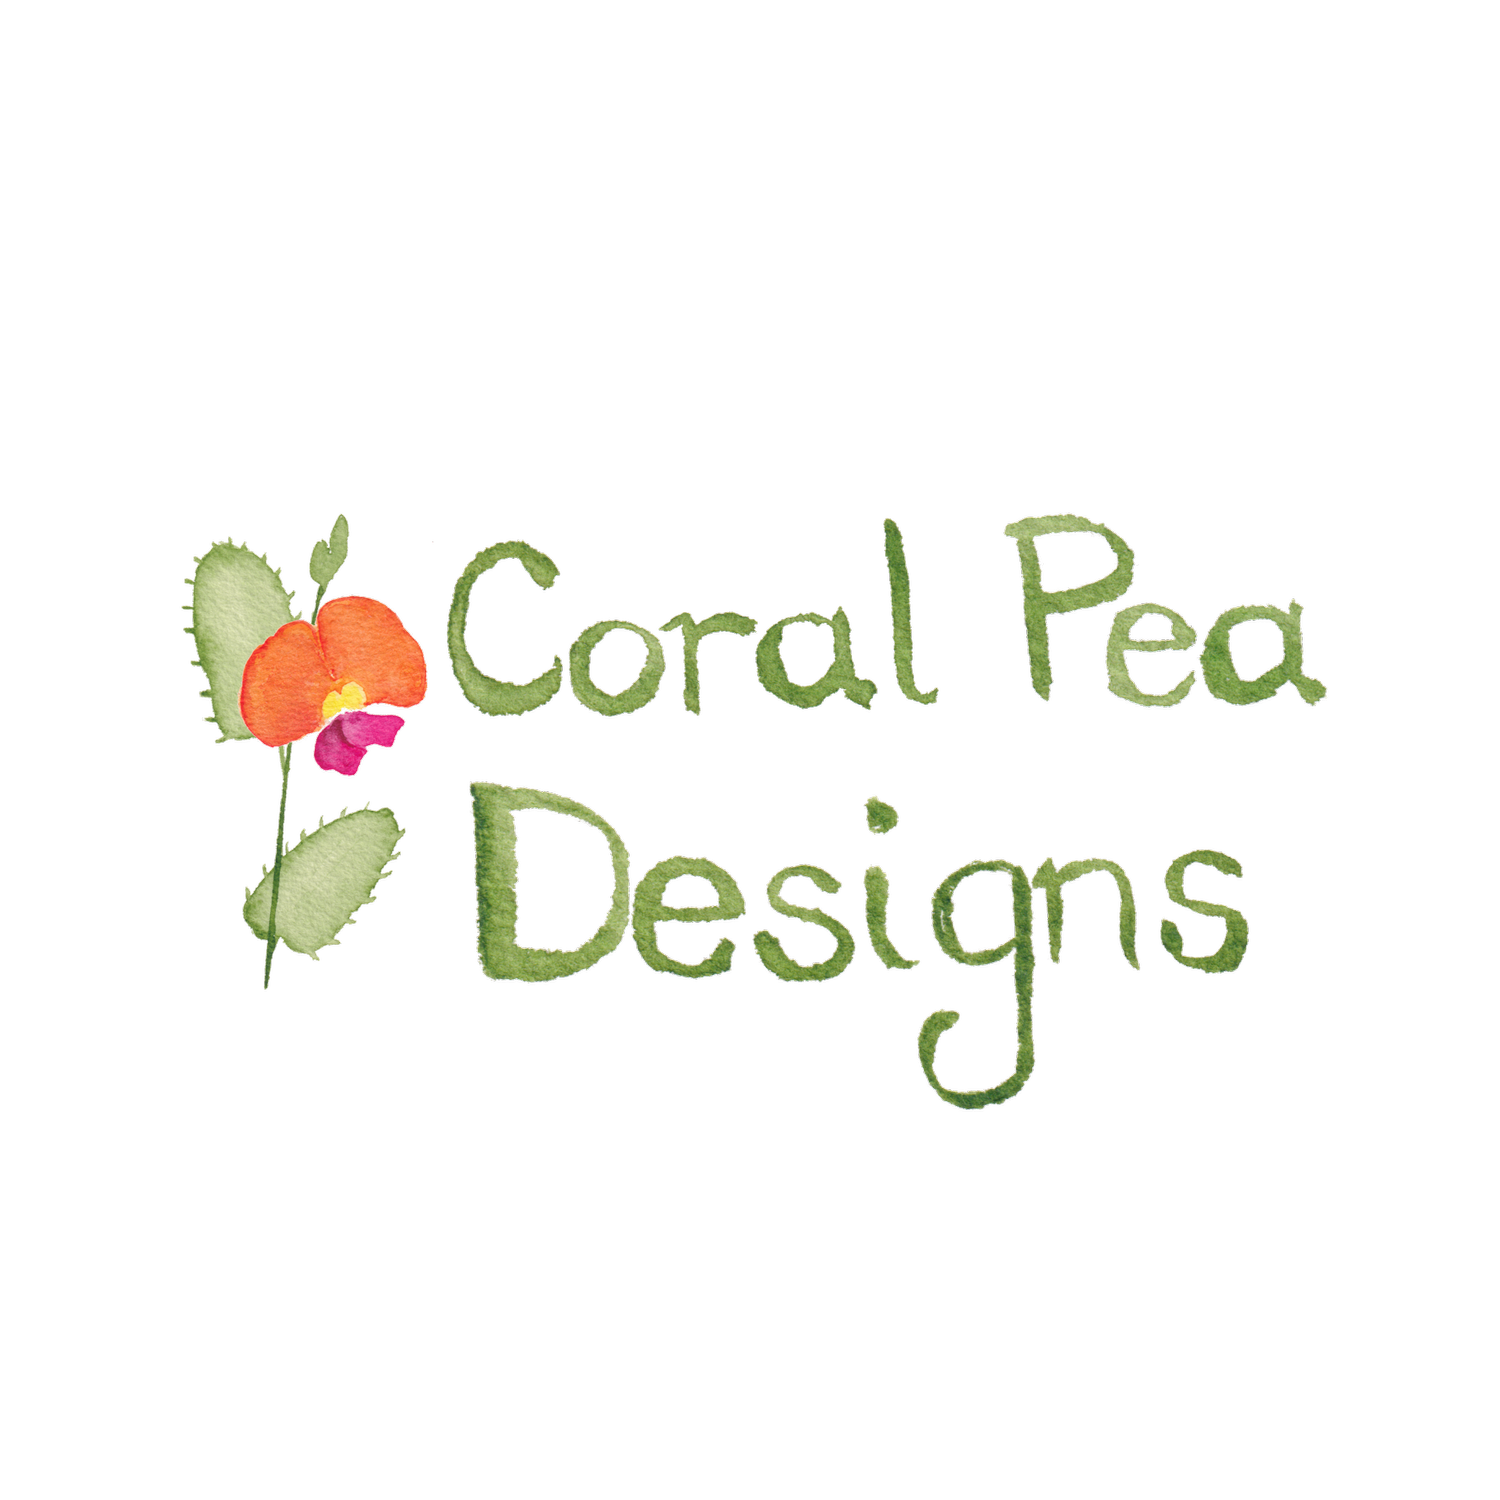 Coral Pea Designs